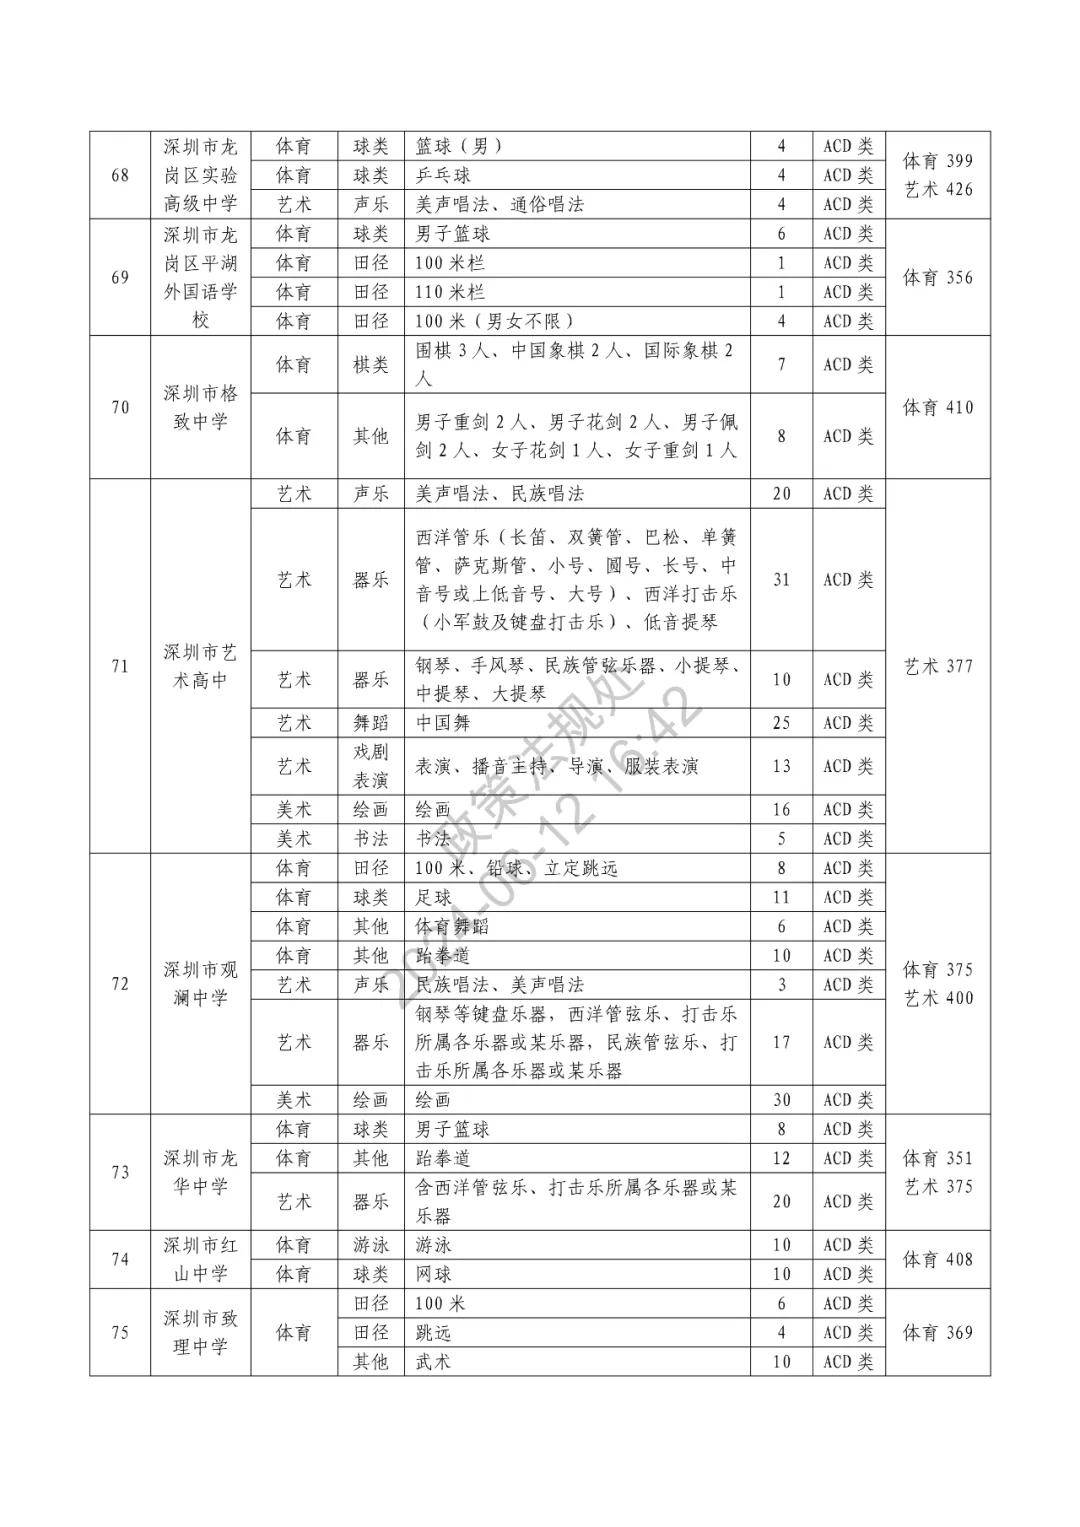 2021南京中考分数线图片